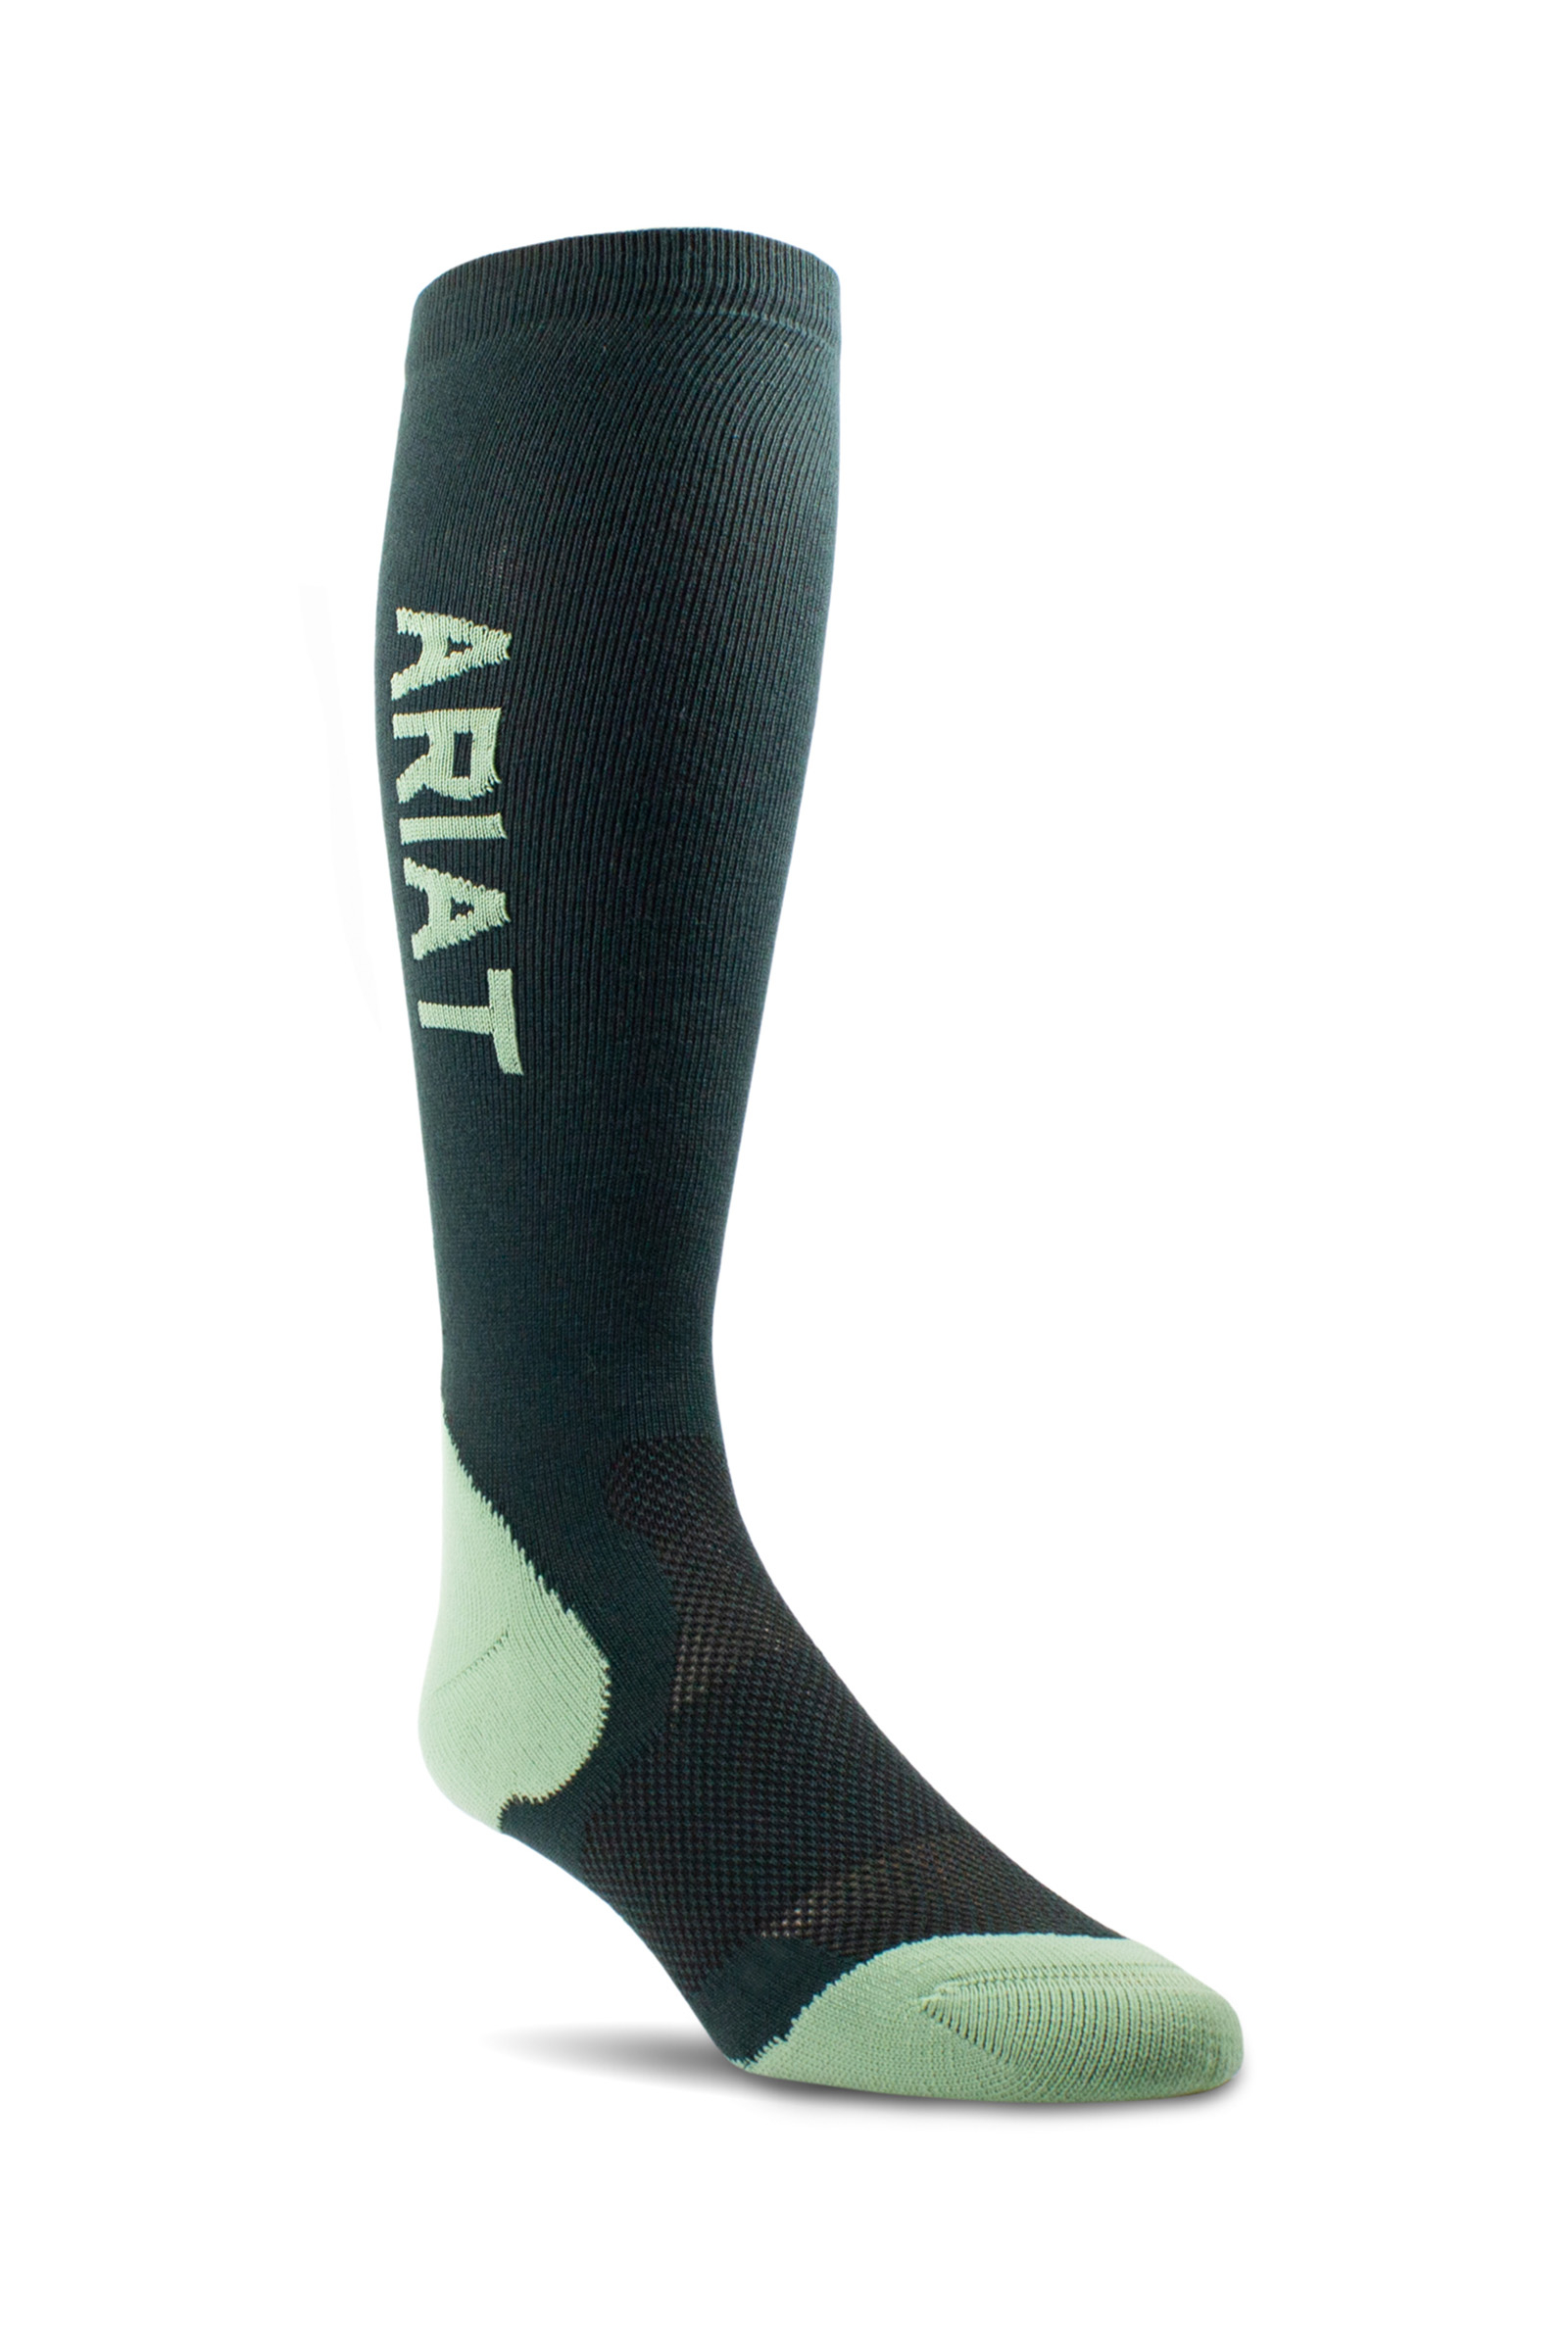 Ariat AriatTEK Ultrathin Performance Socks - Bahr Saddlery